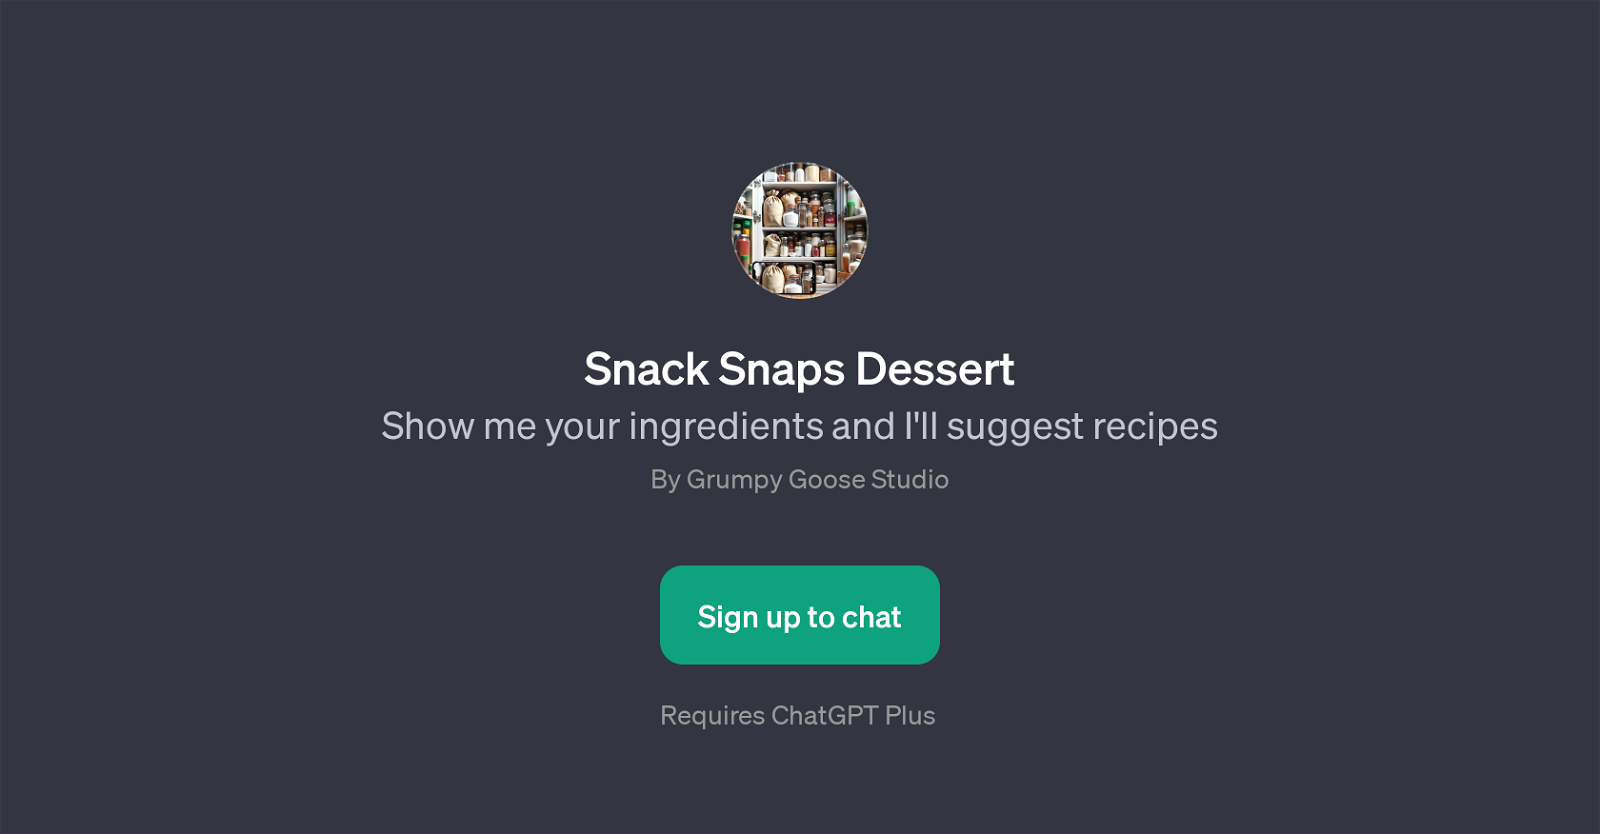 Snack Snaps Dessert website